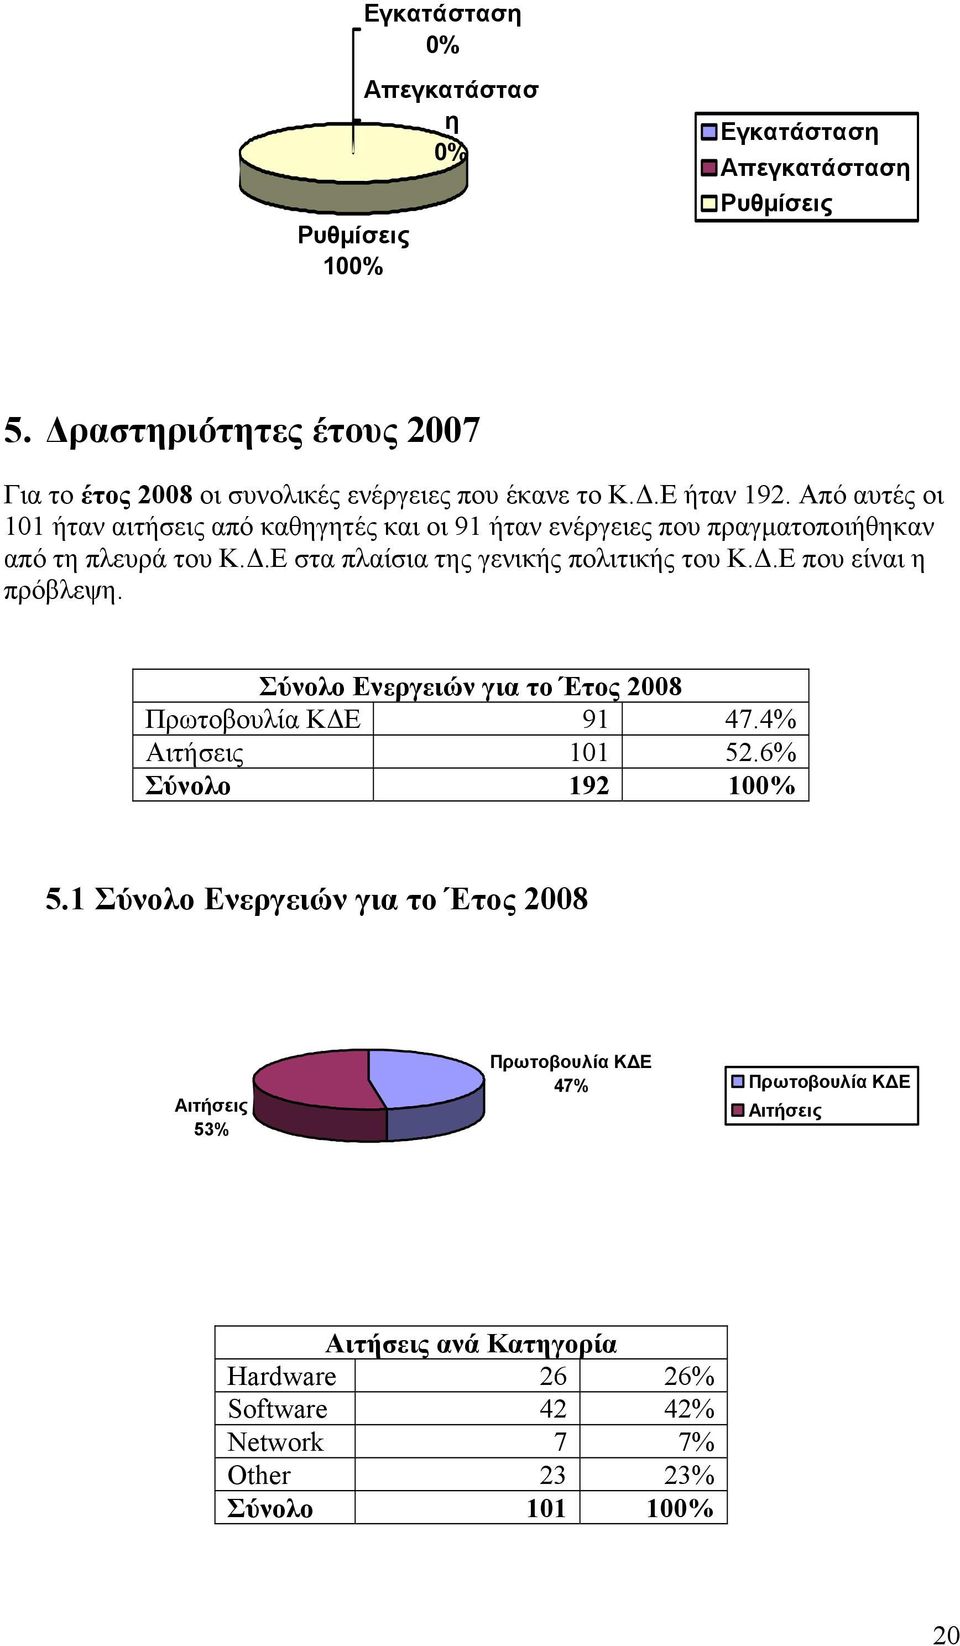 Ε στα πλαίσια της γενικής πολιτικής του Κ.Δ.Ε που είναι η πρόβλεψη. Σύνολο Ενεργειών για το Έτος 2008 Πρωτοβουλία ΚΔΕ 91 47.4% Αιτήσεις 101 52.